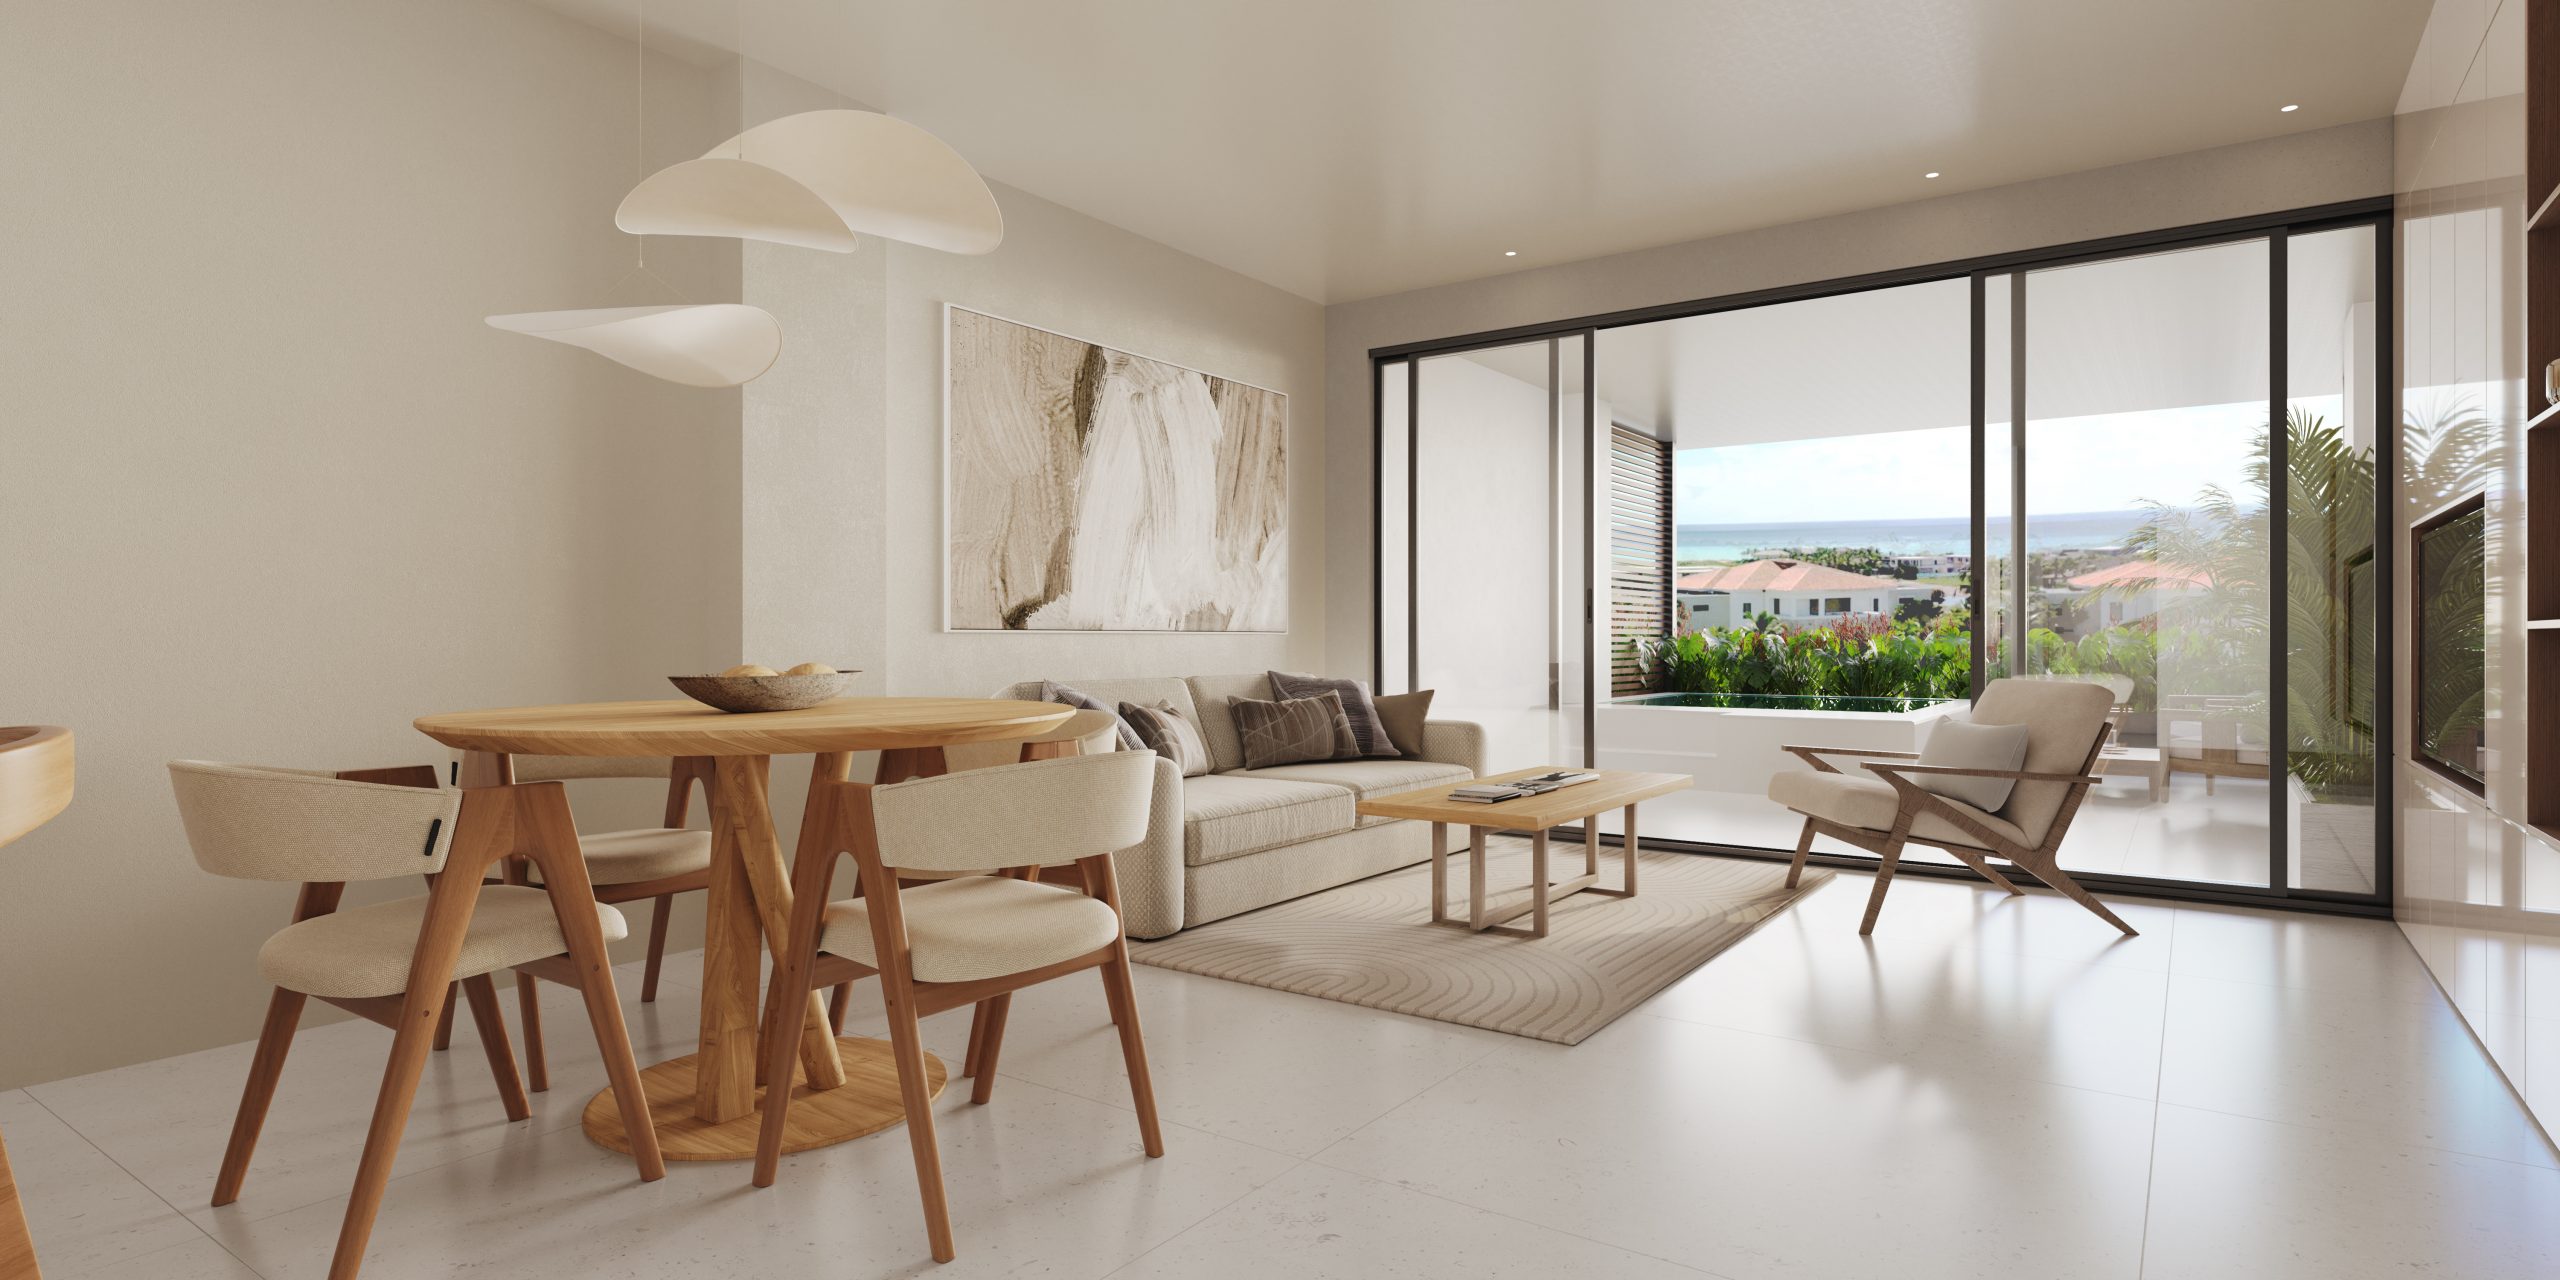 Apartamentode 2 habitaciones en Cap Cana con vista al Mar